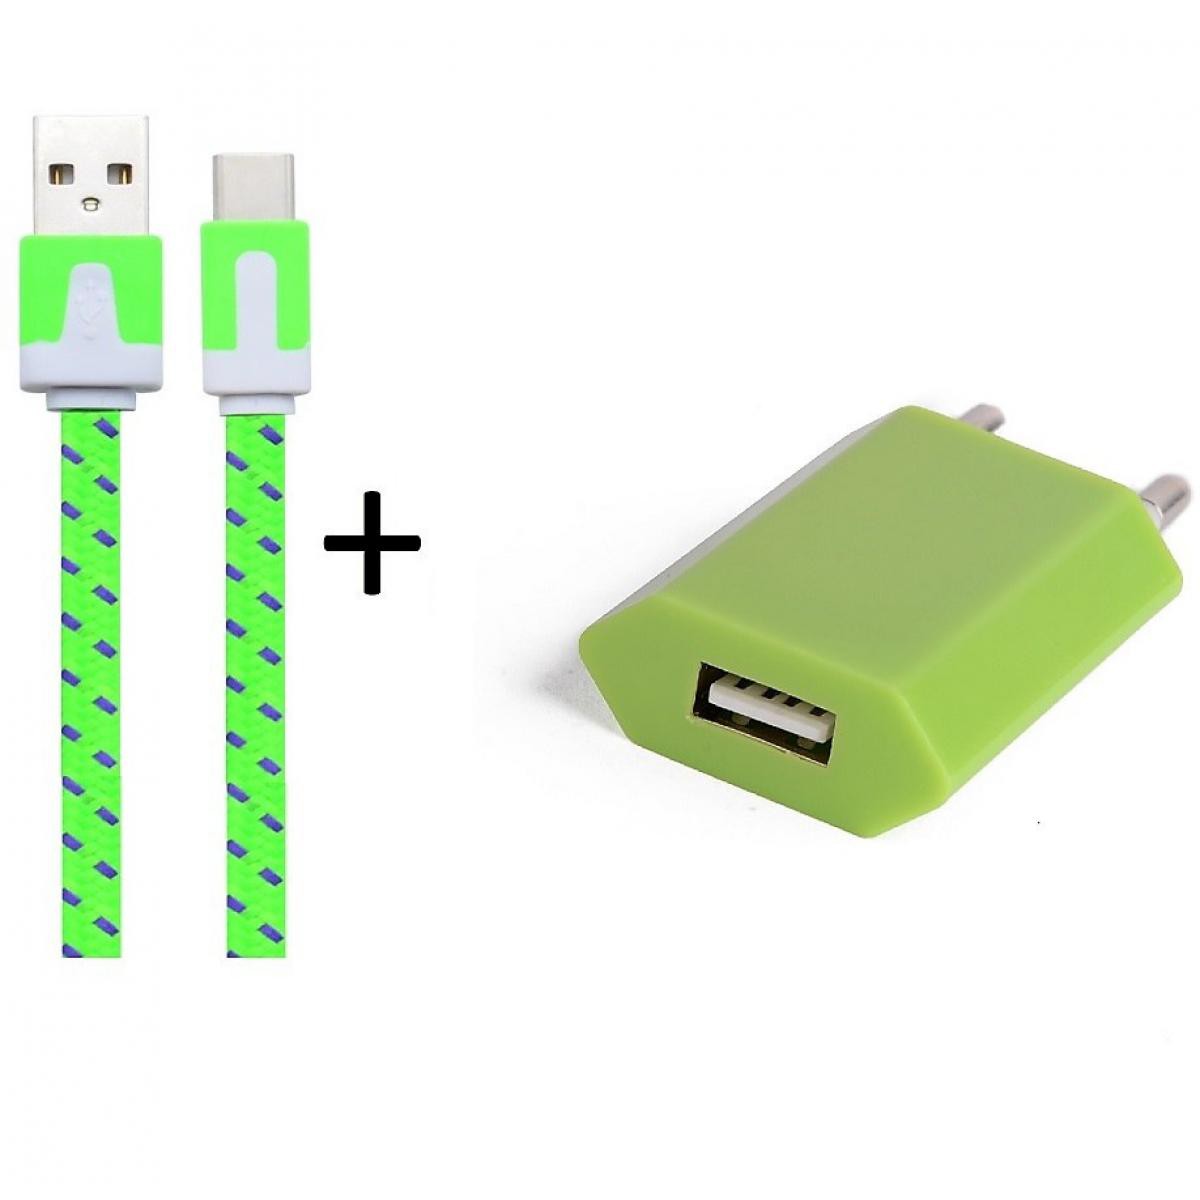 Shot - Pack Chargeur pour OPPO Reno2 Smartphone Type C (Cable Noodle 1m Chargeur + Prise Secteur USB) Murale Android (VERT) - Chargeur secteur téléphone